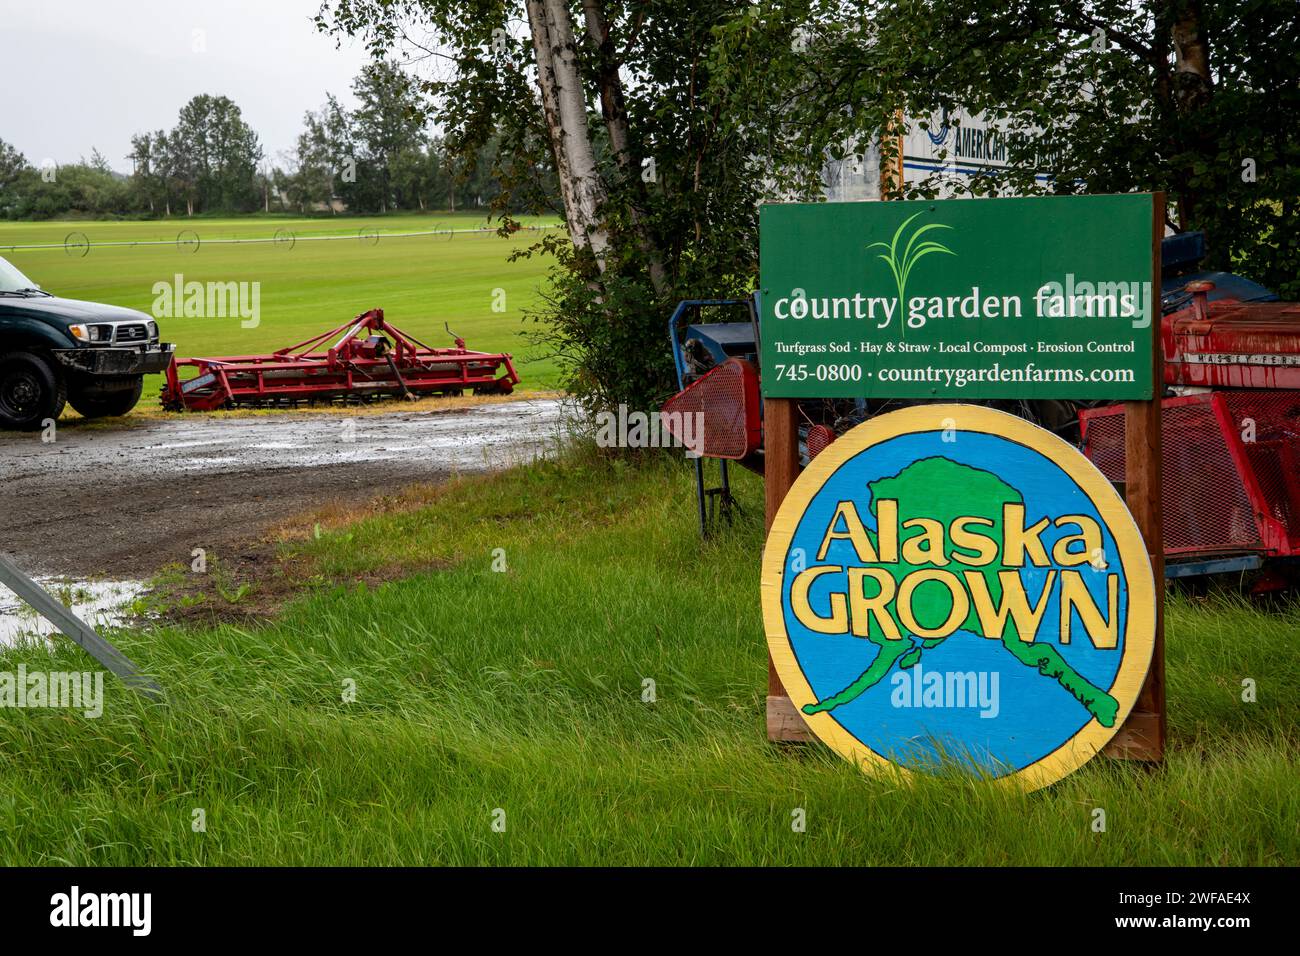 Palmer, Alaska. Country Garden Farms, vende sod, compost e controllo dell'erosione coltivati in Alaska a prezzi equi per contribuire a preservare i terreni agricoli per i futuri generi Foto Stock